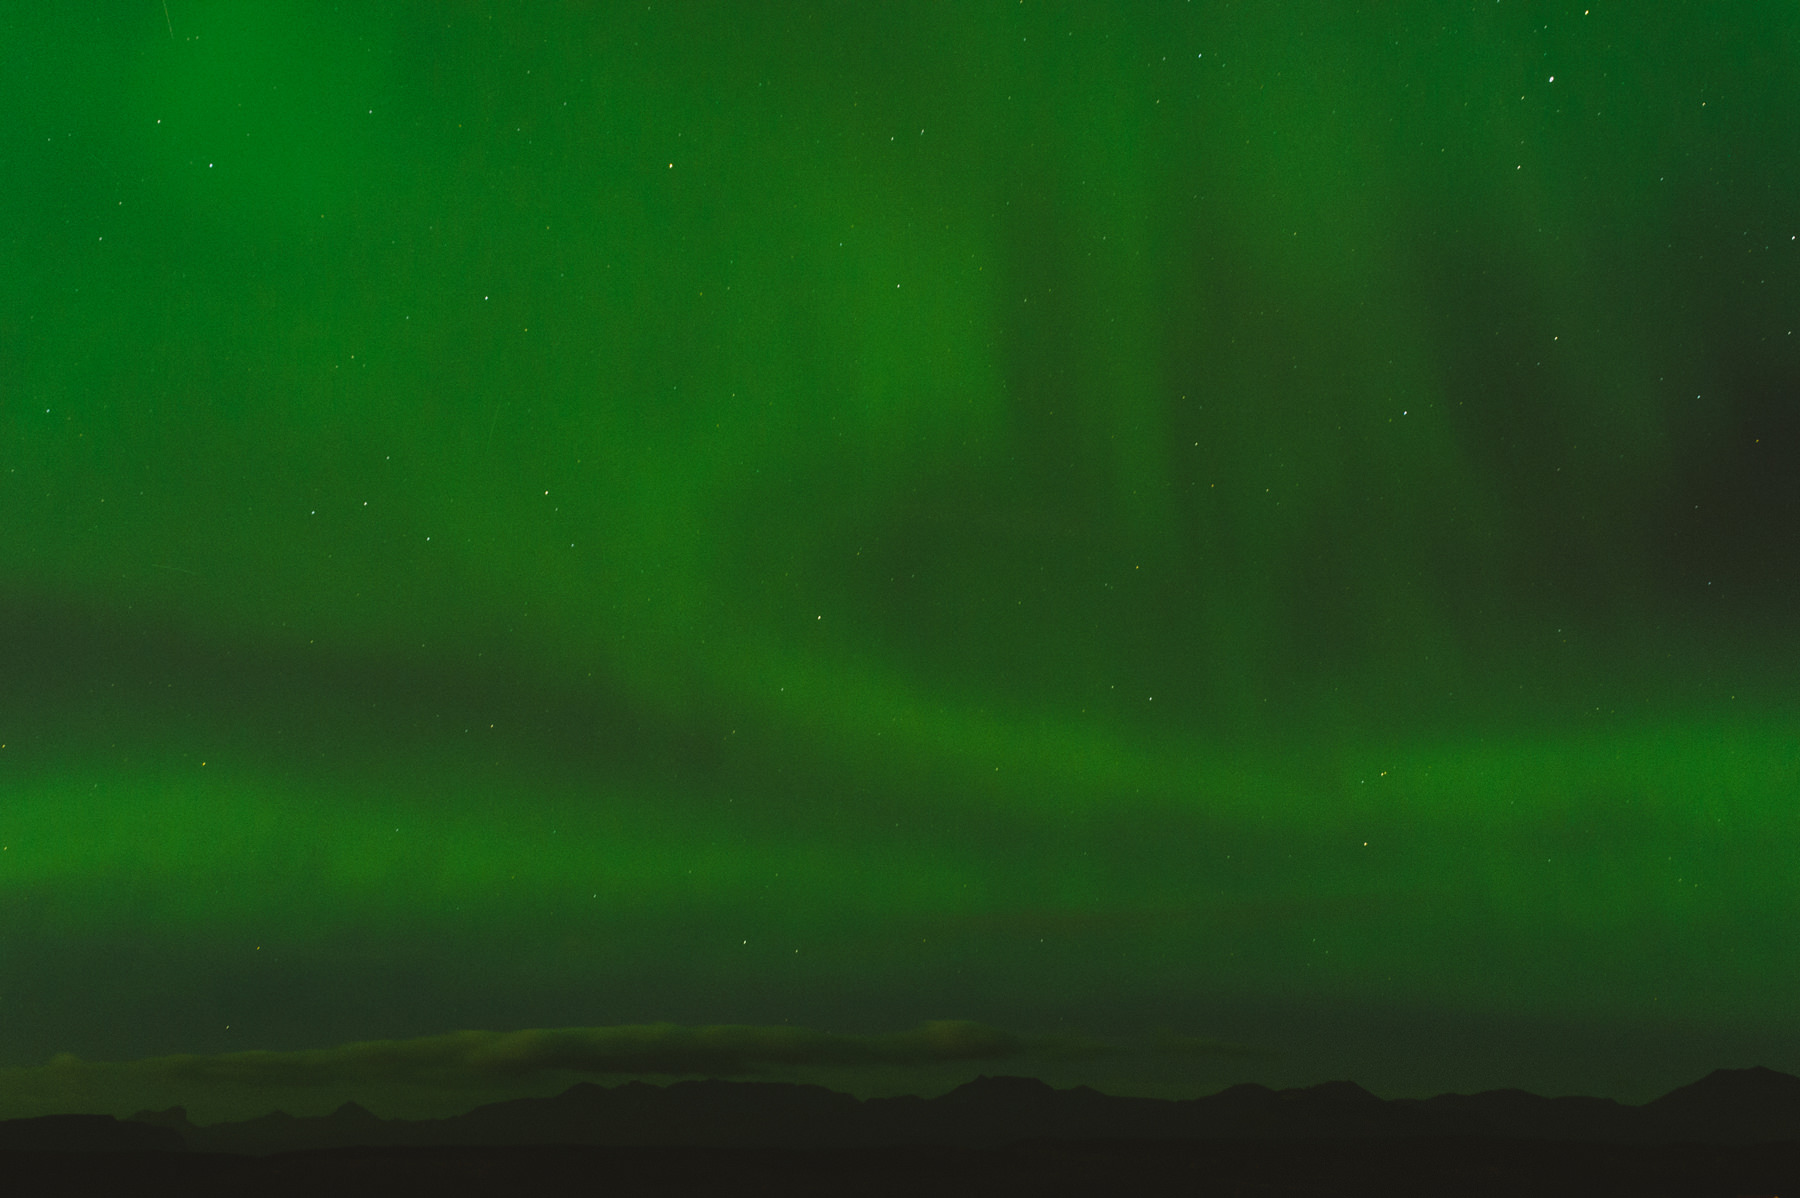 Northern lights in Stykkisholmur Iceland